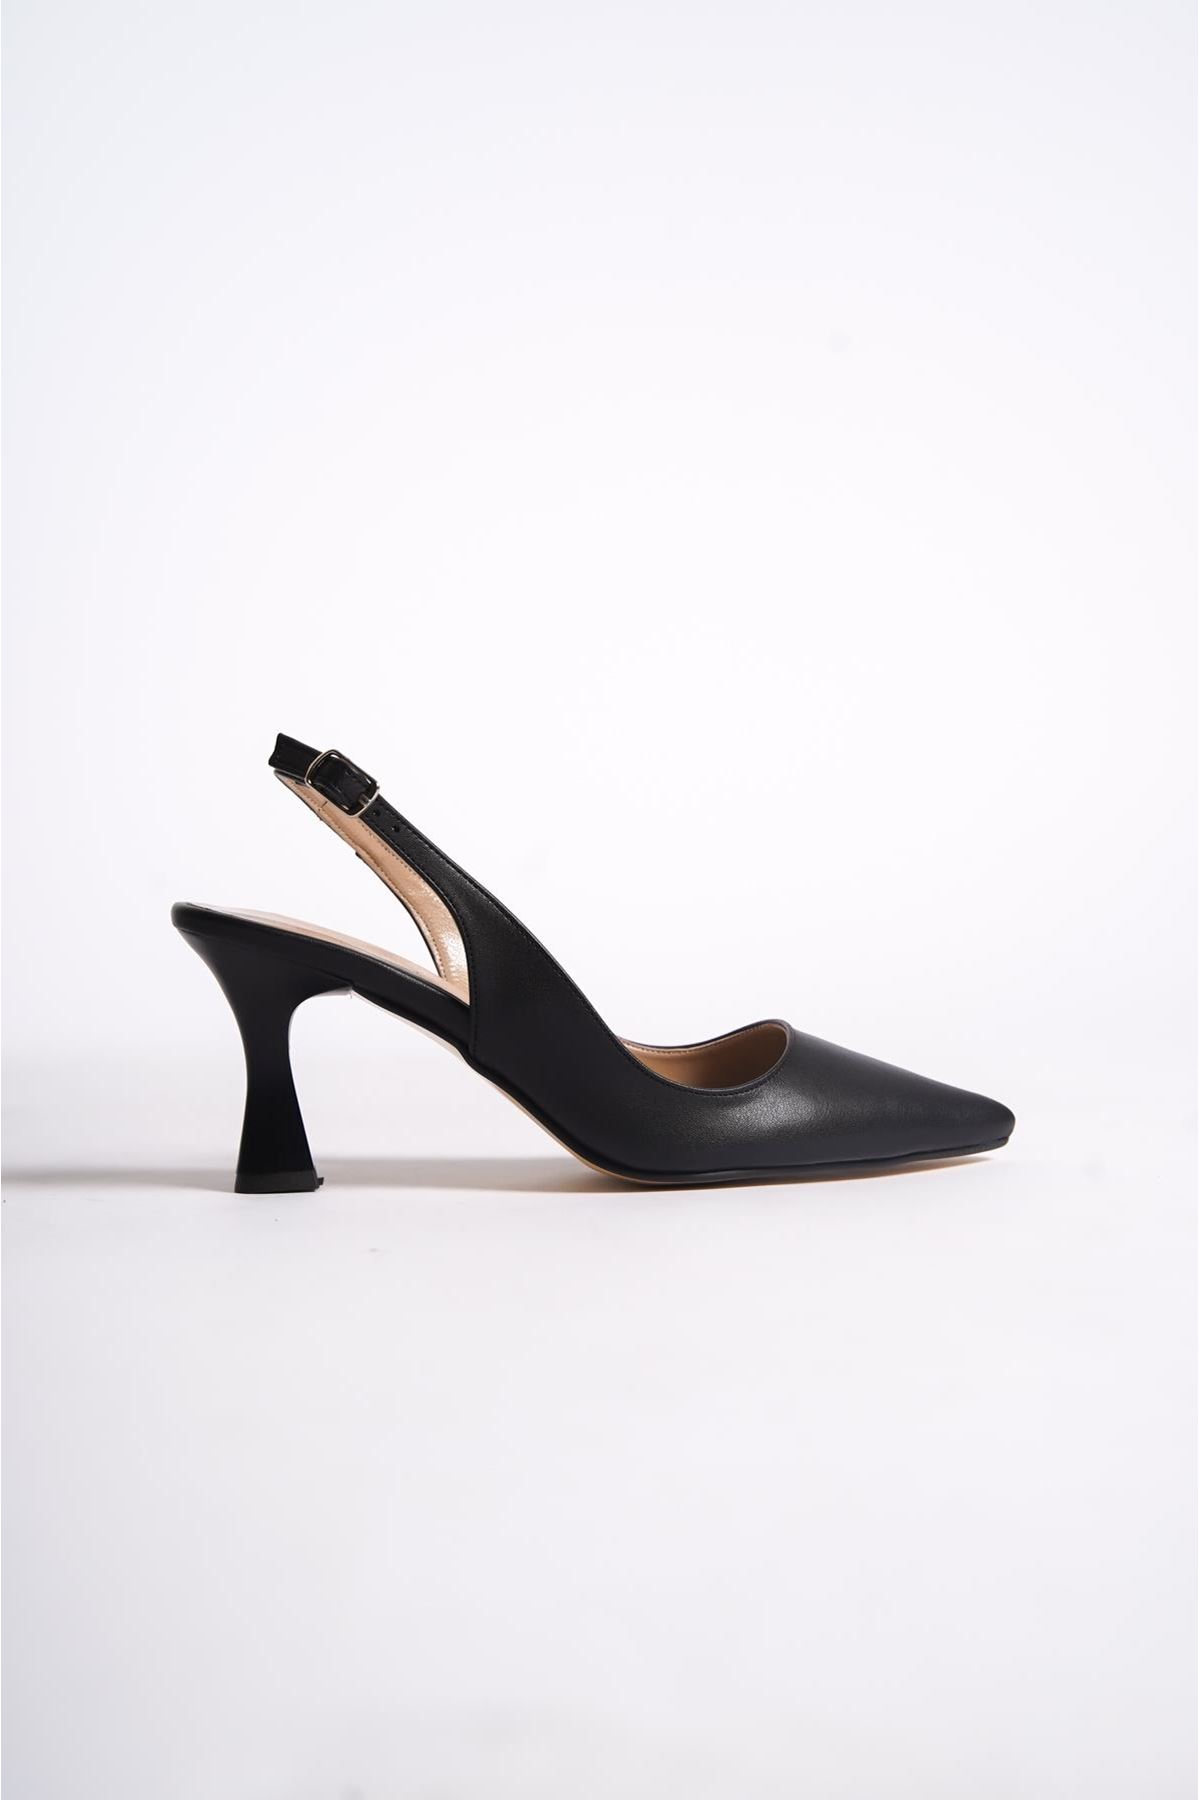 Kadın Stiletto Kısa Topuklu Ayakkabı Tweety Siyah Cilt-Sade